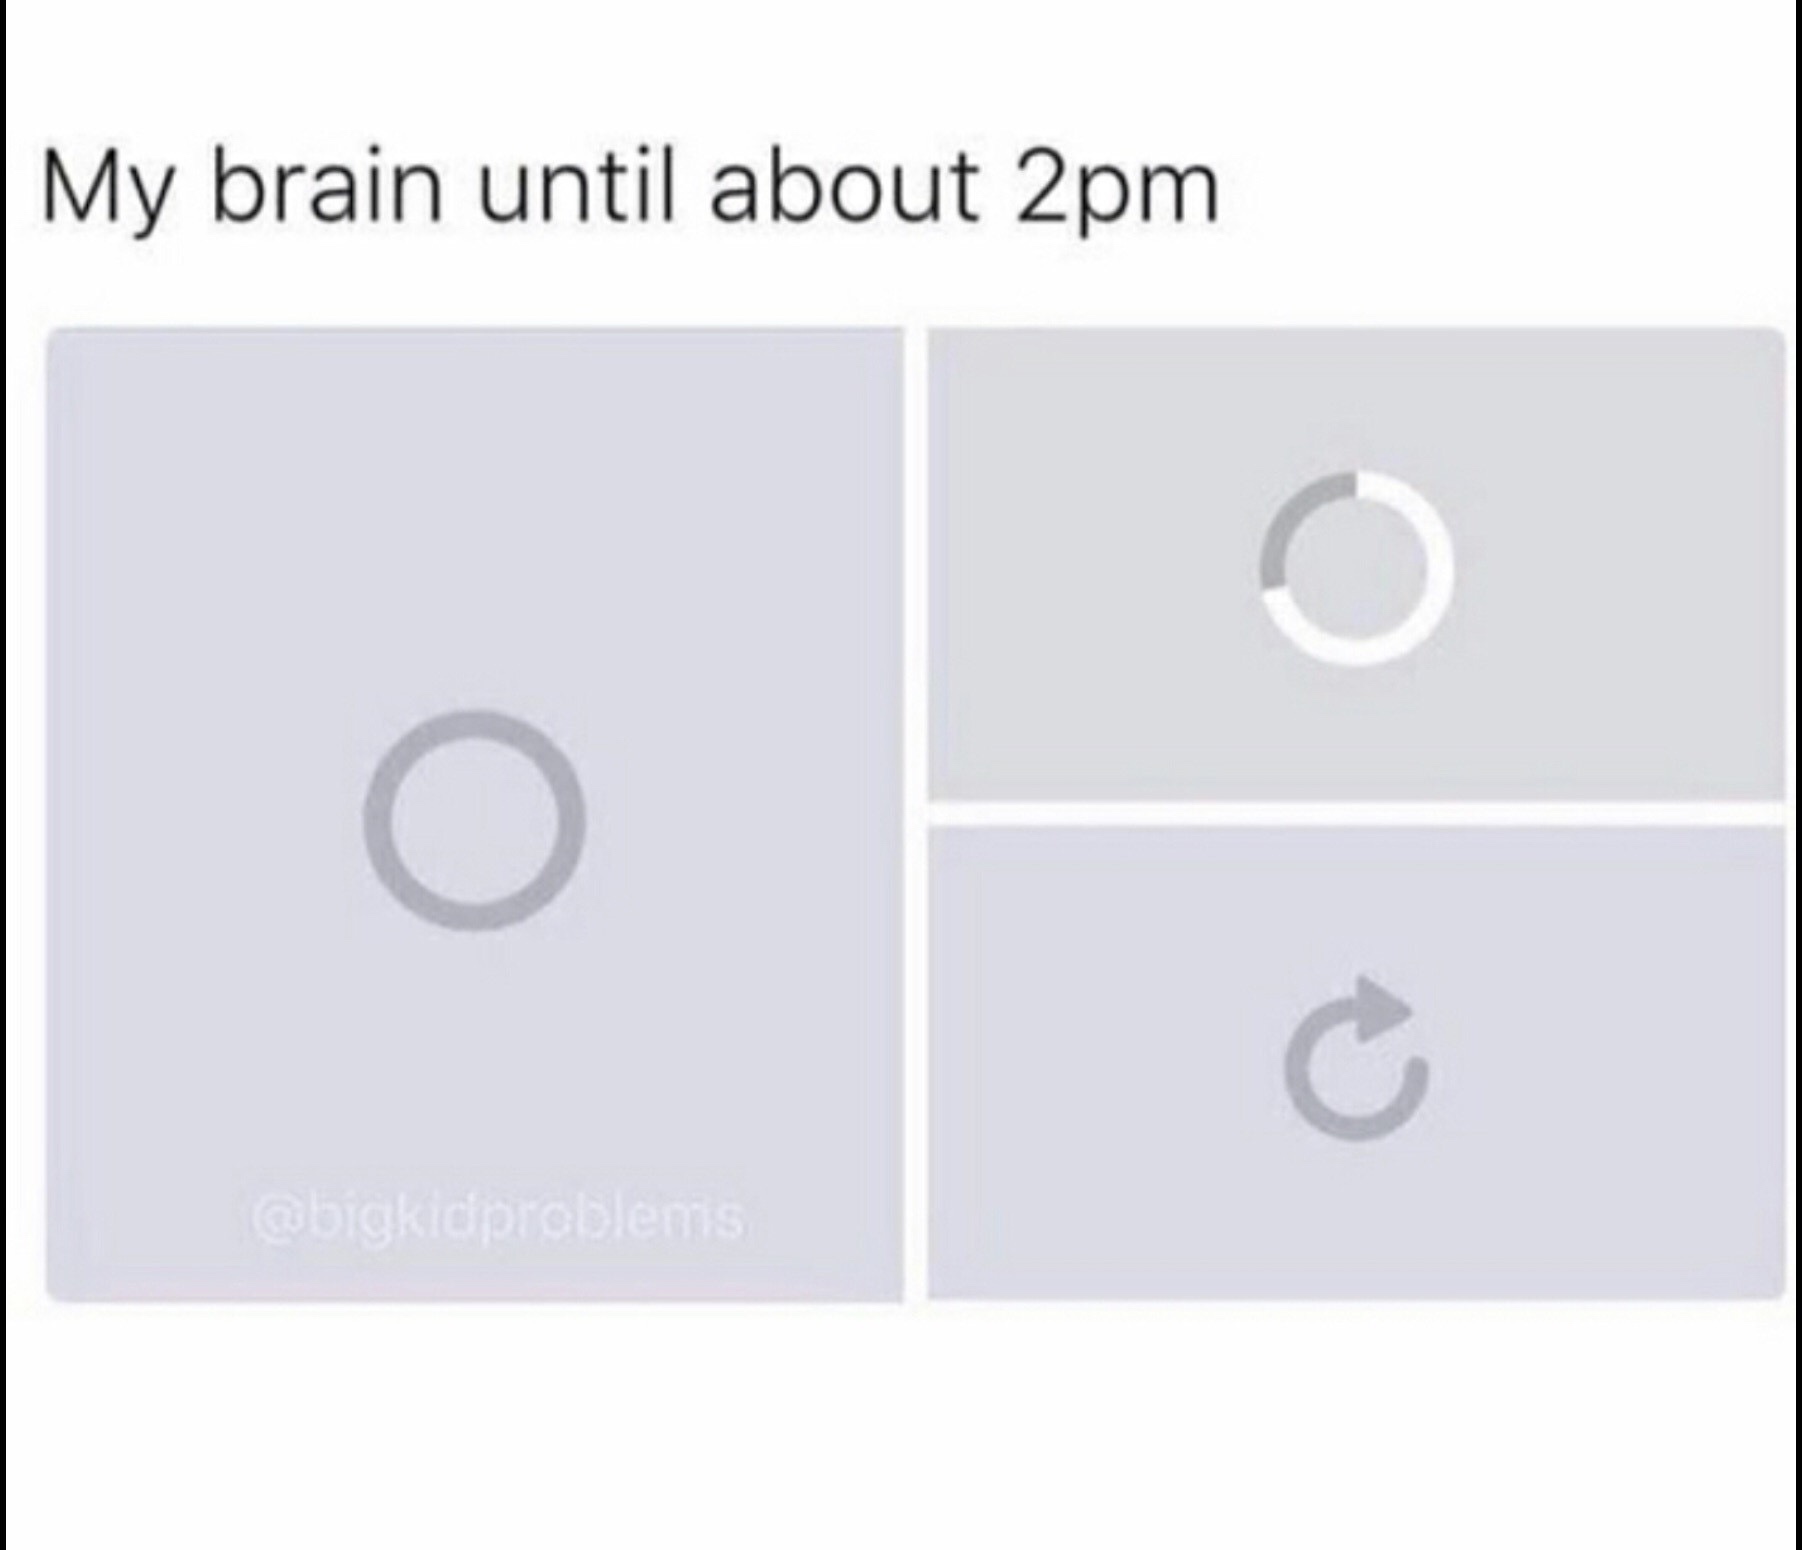 my brain in math meme - My brain until about 2pm